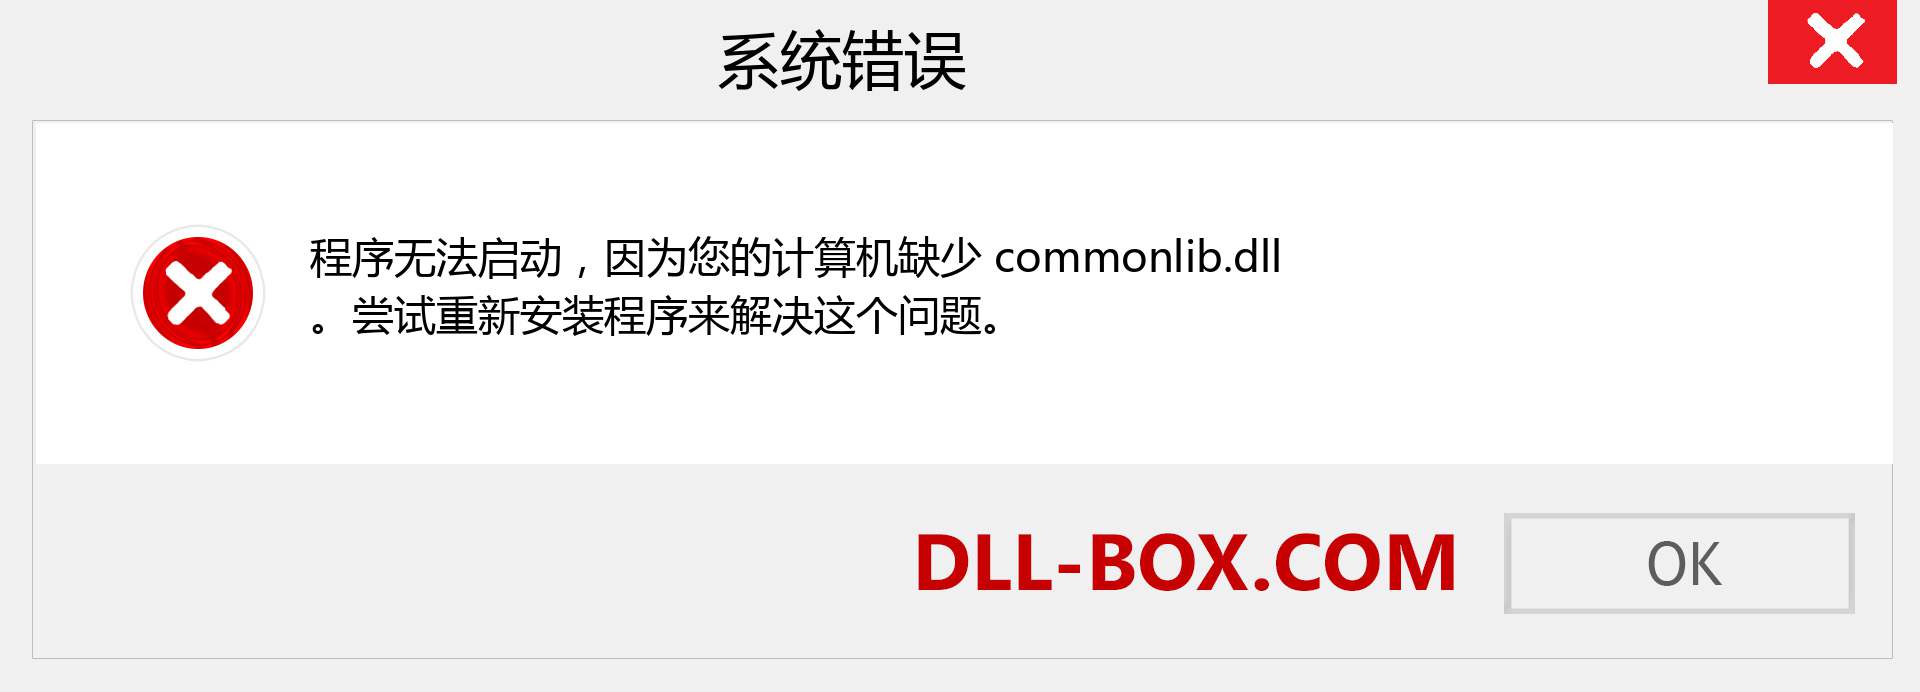 commonlib.dll 文件丢失？。 适用于 Windows 7、8、10 的下载 - 修复 Windows、照片、图像上的 commonlib dll 丢失错误